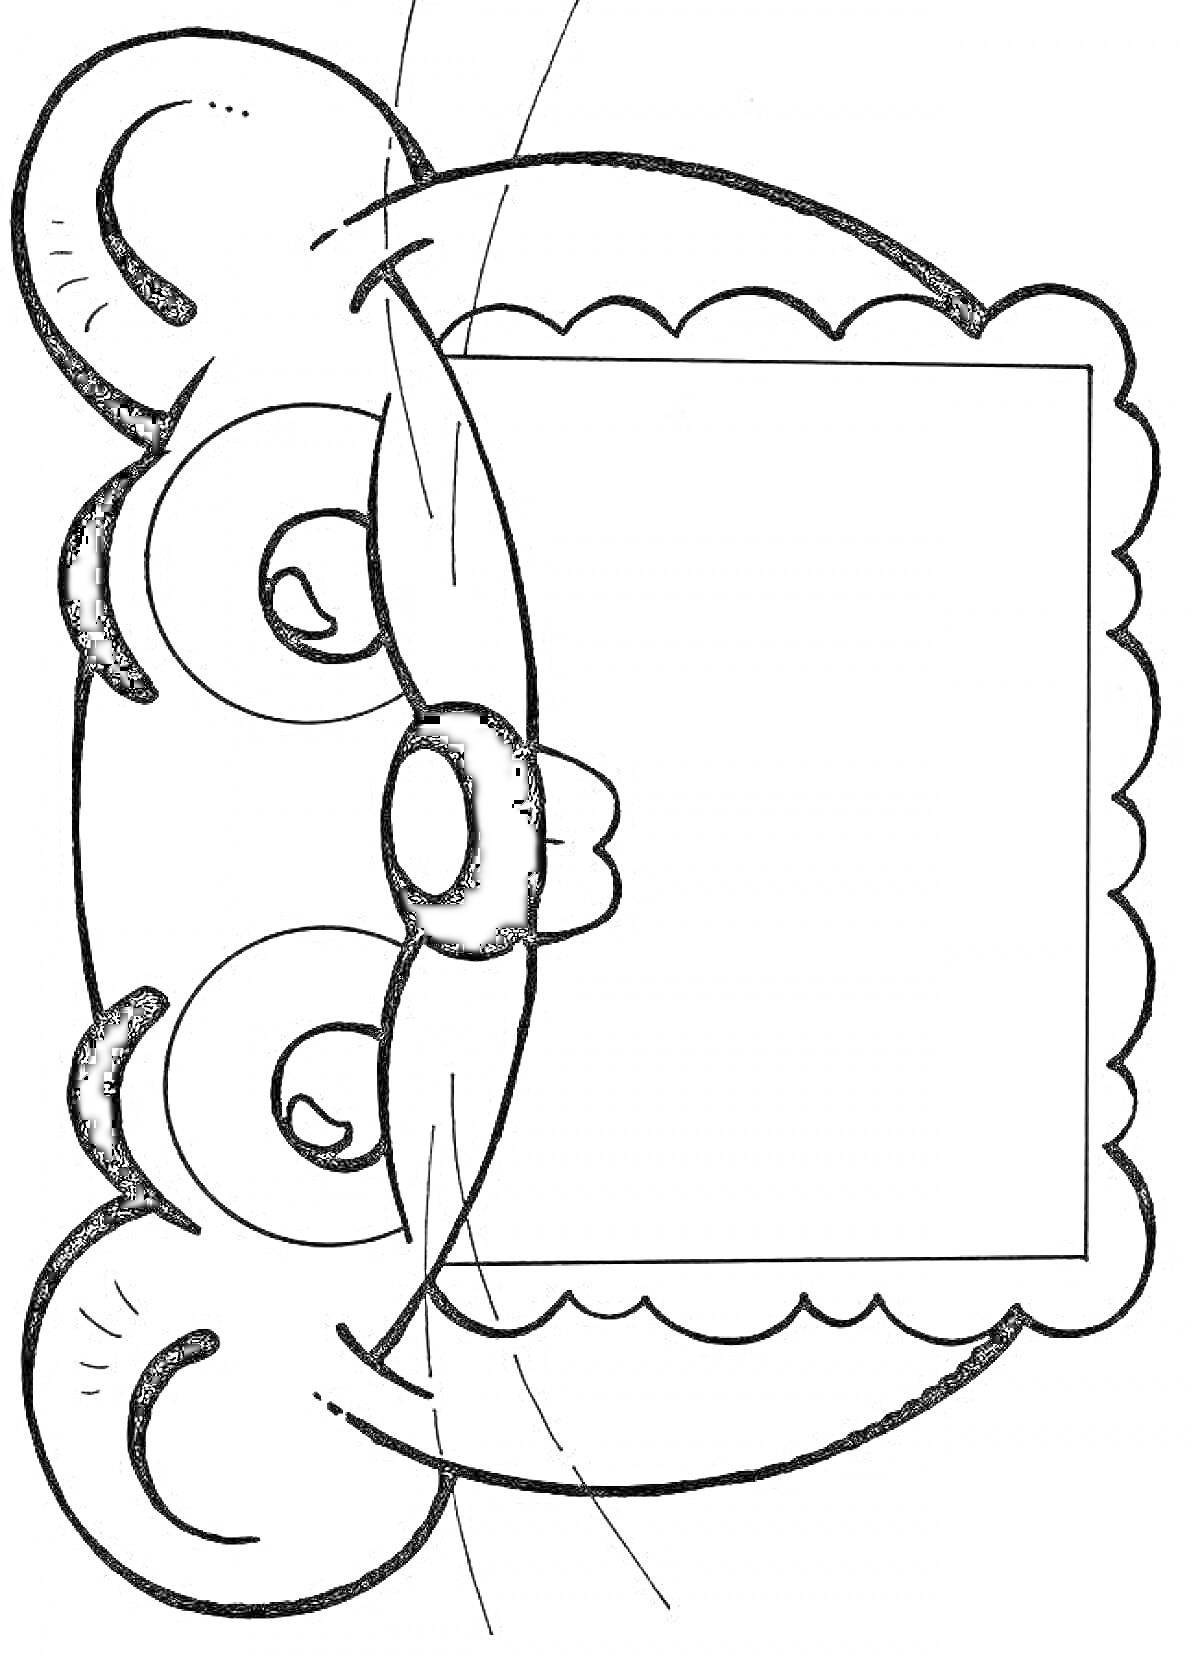 Раскраска Приглашение на день рождения в виде мордочки мышки с большим квадратом для текста